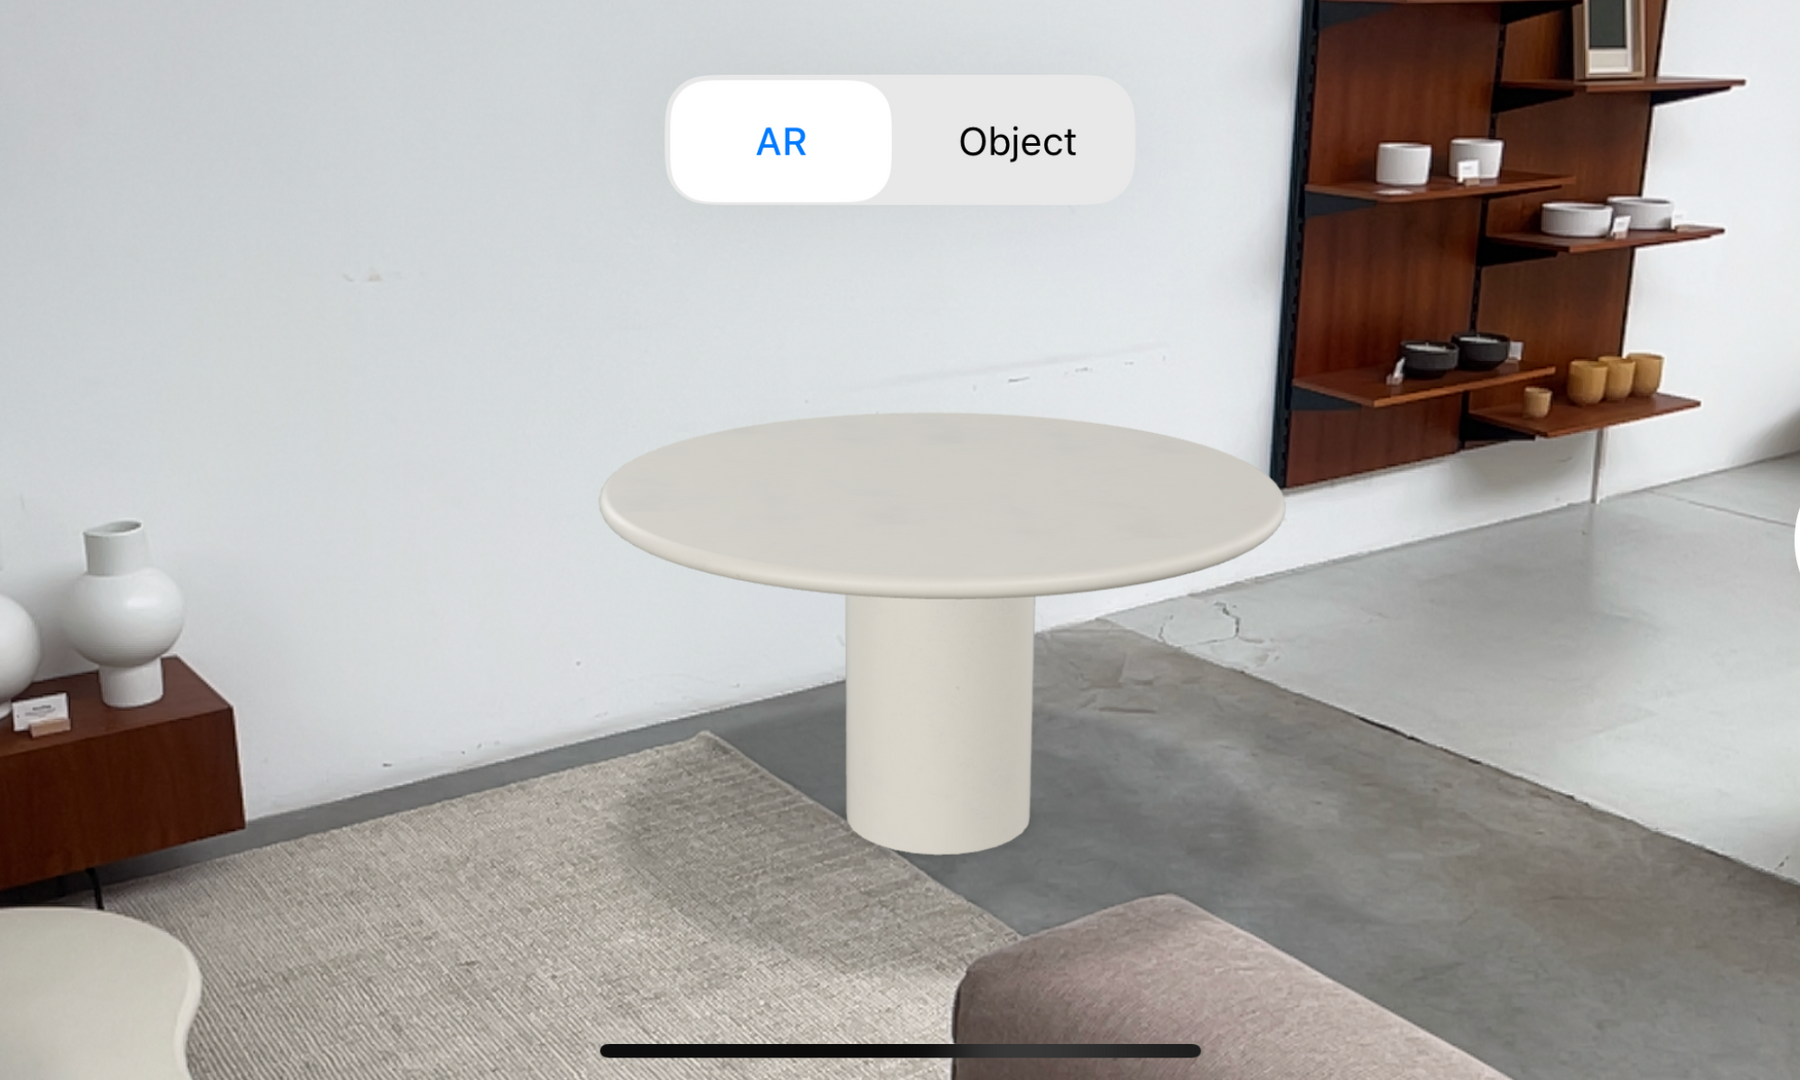 Furnified lanceert augmented reality voor meubels. Test je meubels uit in je eigen interieur!